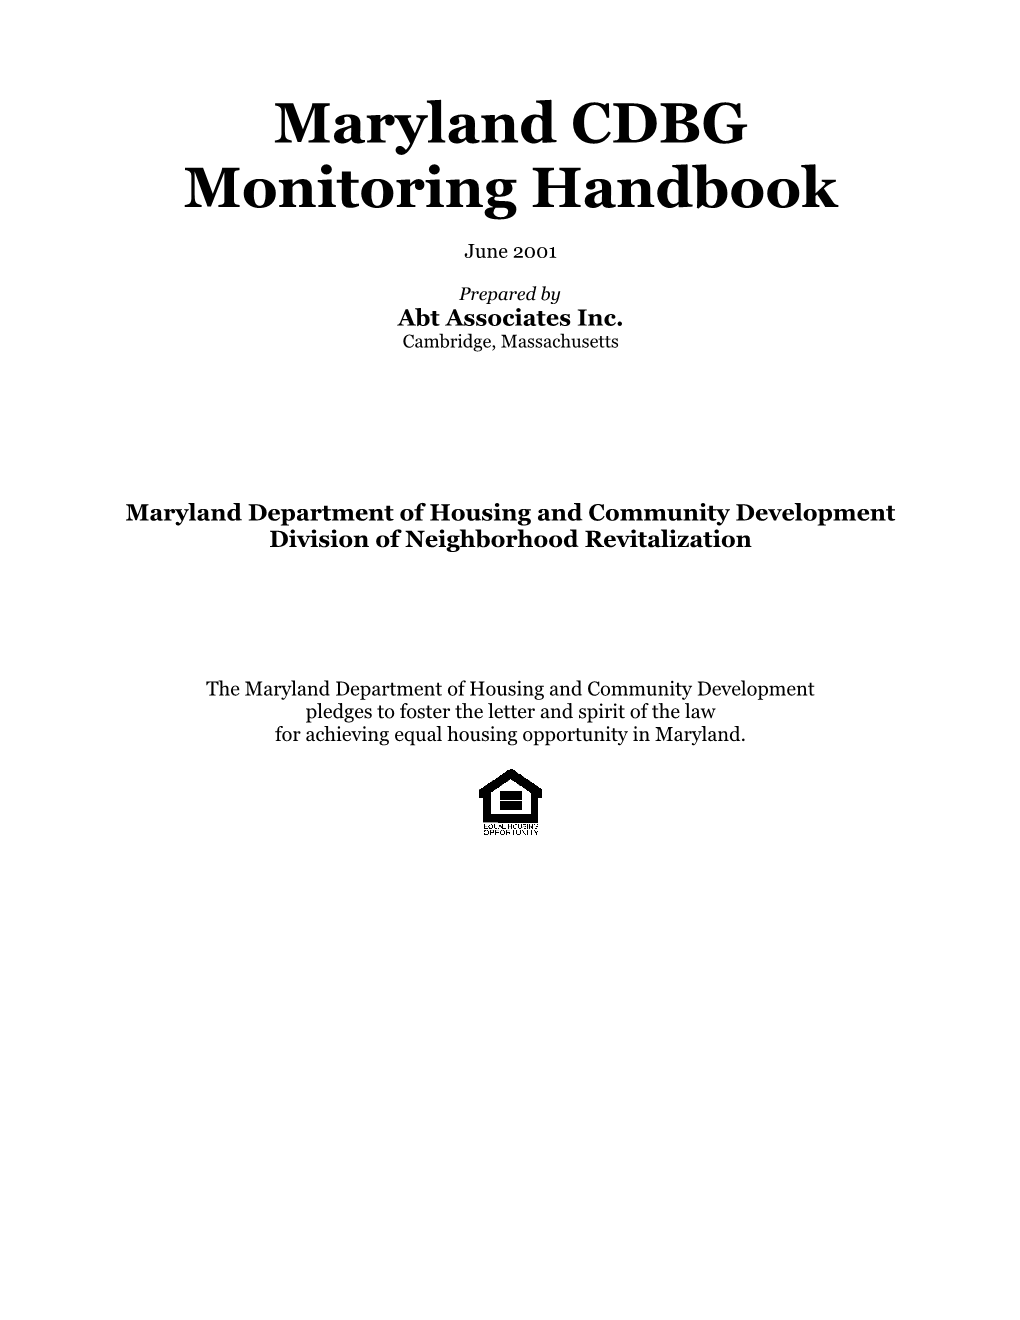 Download Full Handbook (425K)